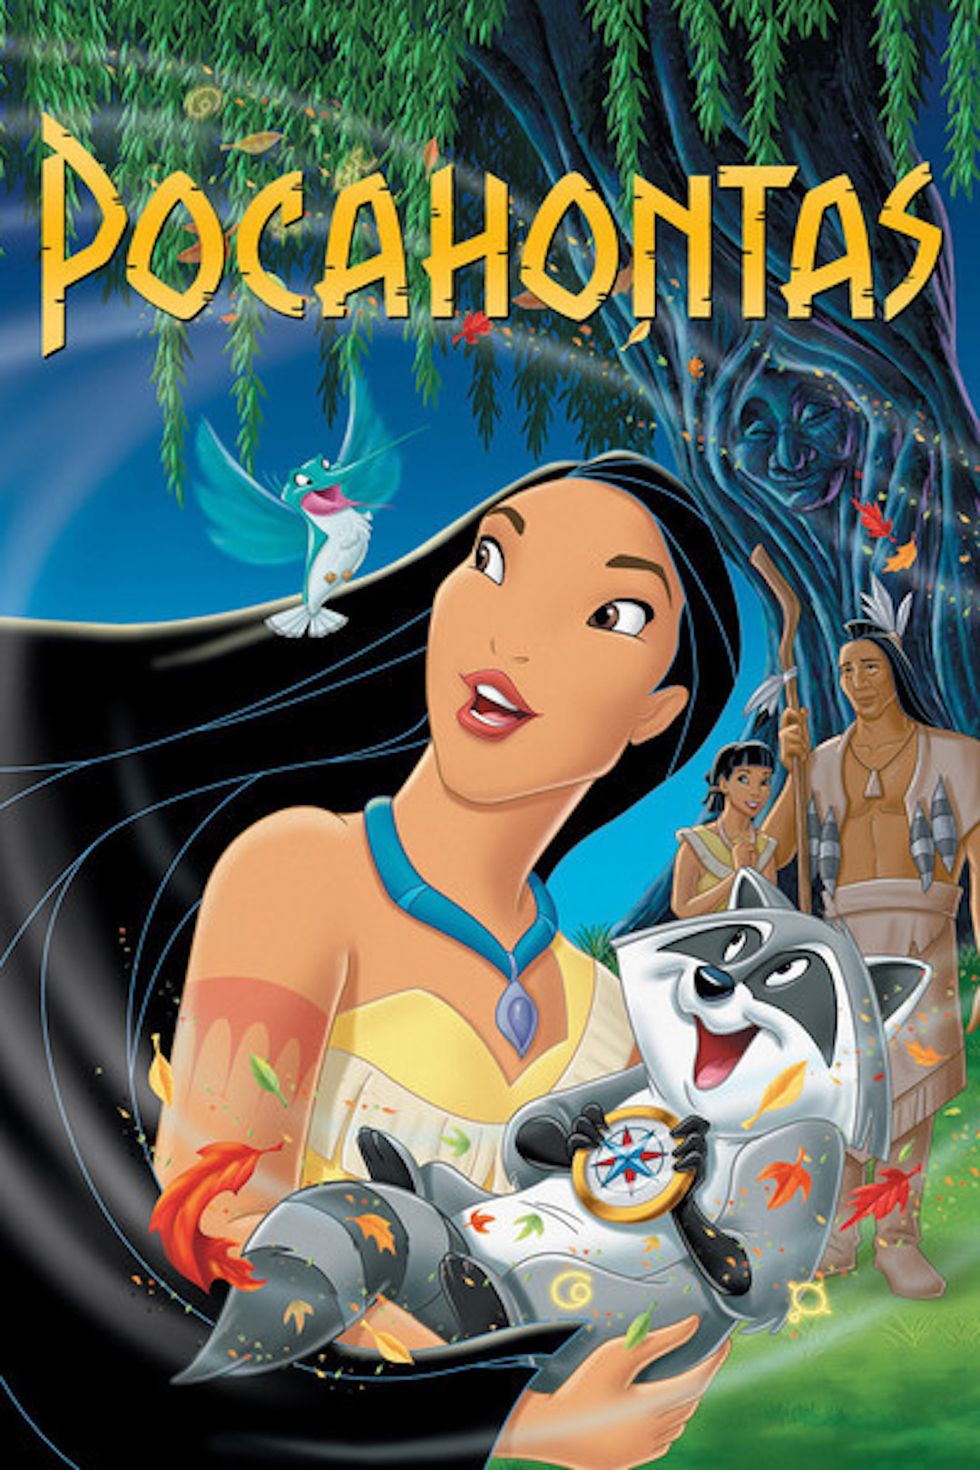 Facts Disney's Pocahontas Got Wrong